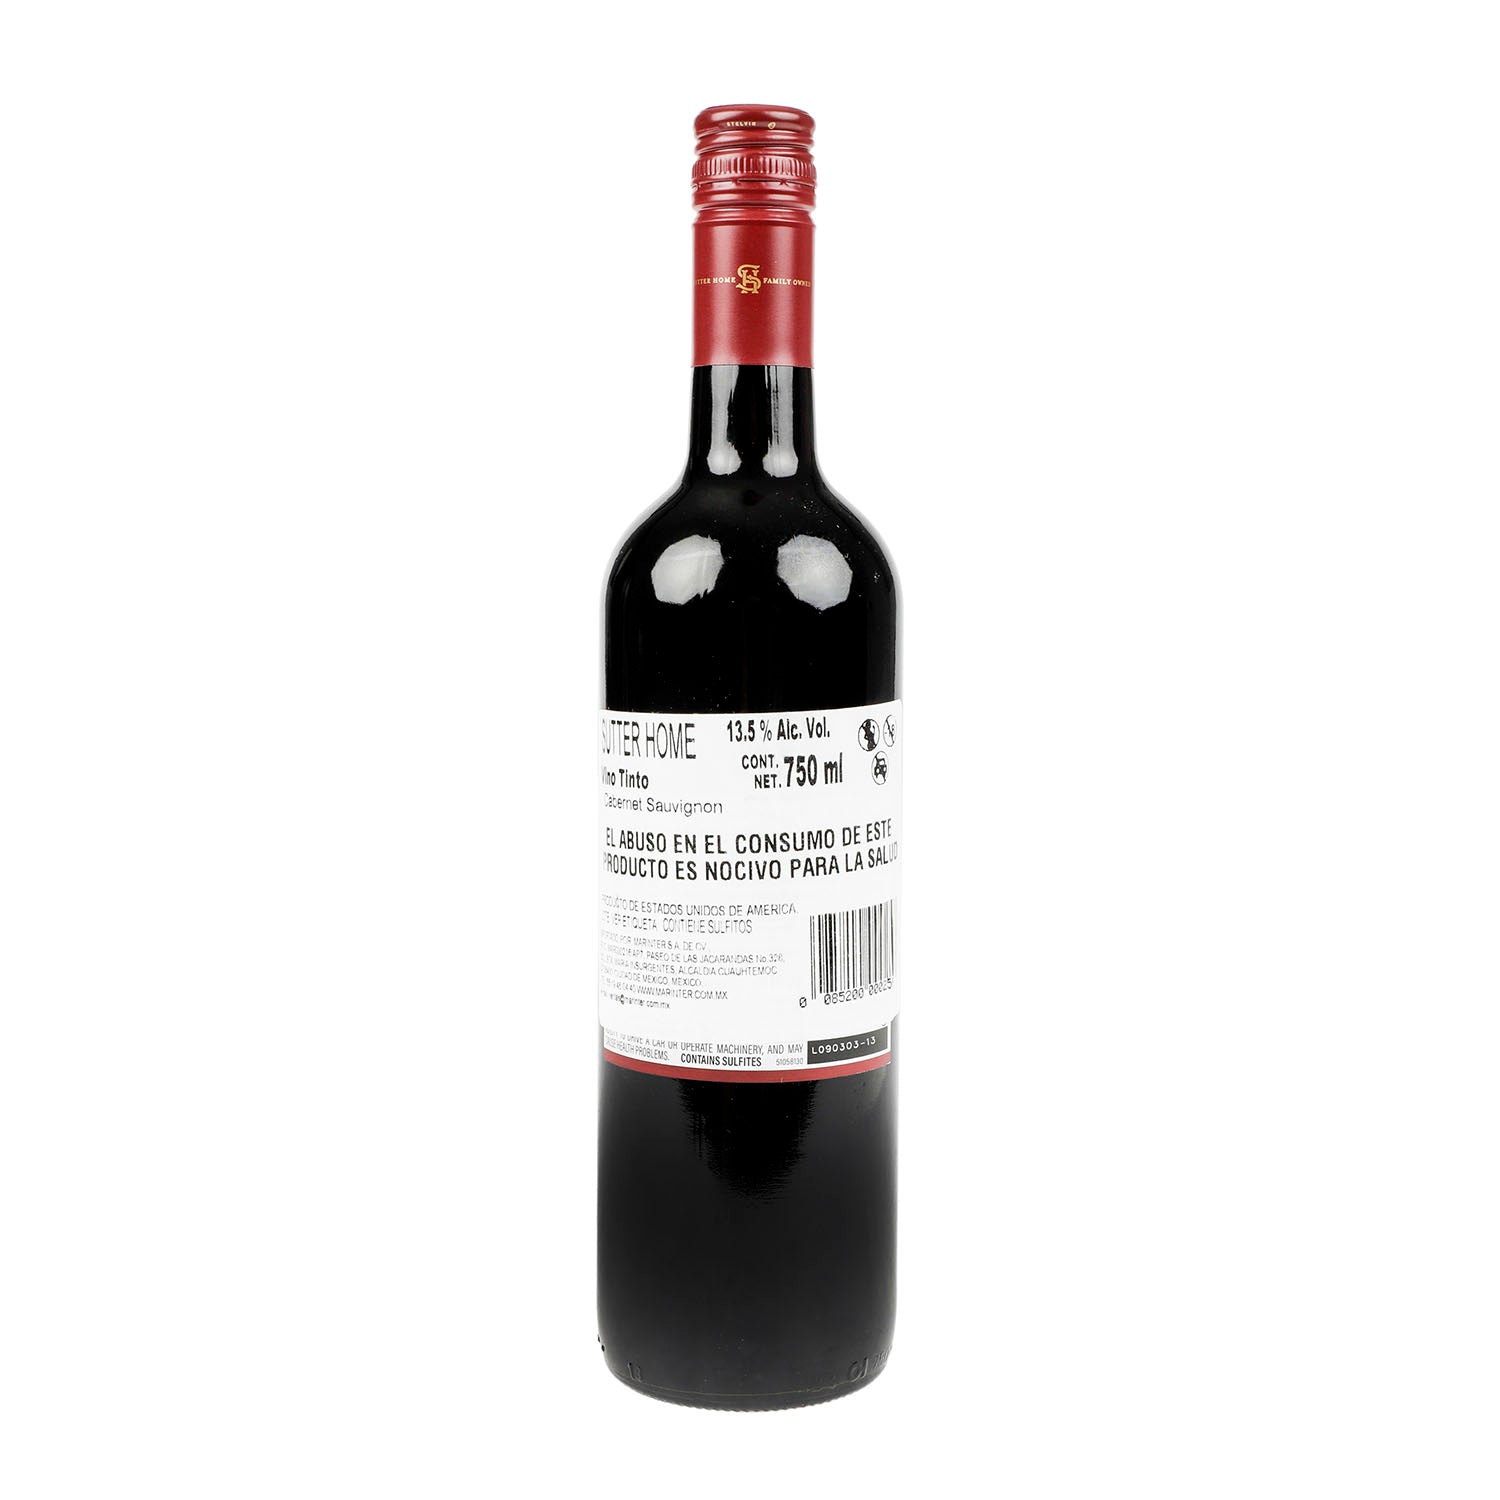 Promoción 3x2 - Vino Tinto Sutter Home Cabernet Sauvignon de 750 ml